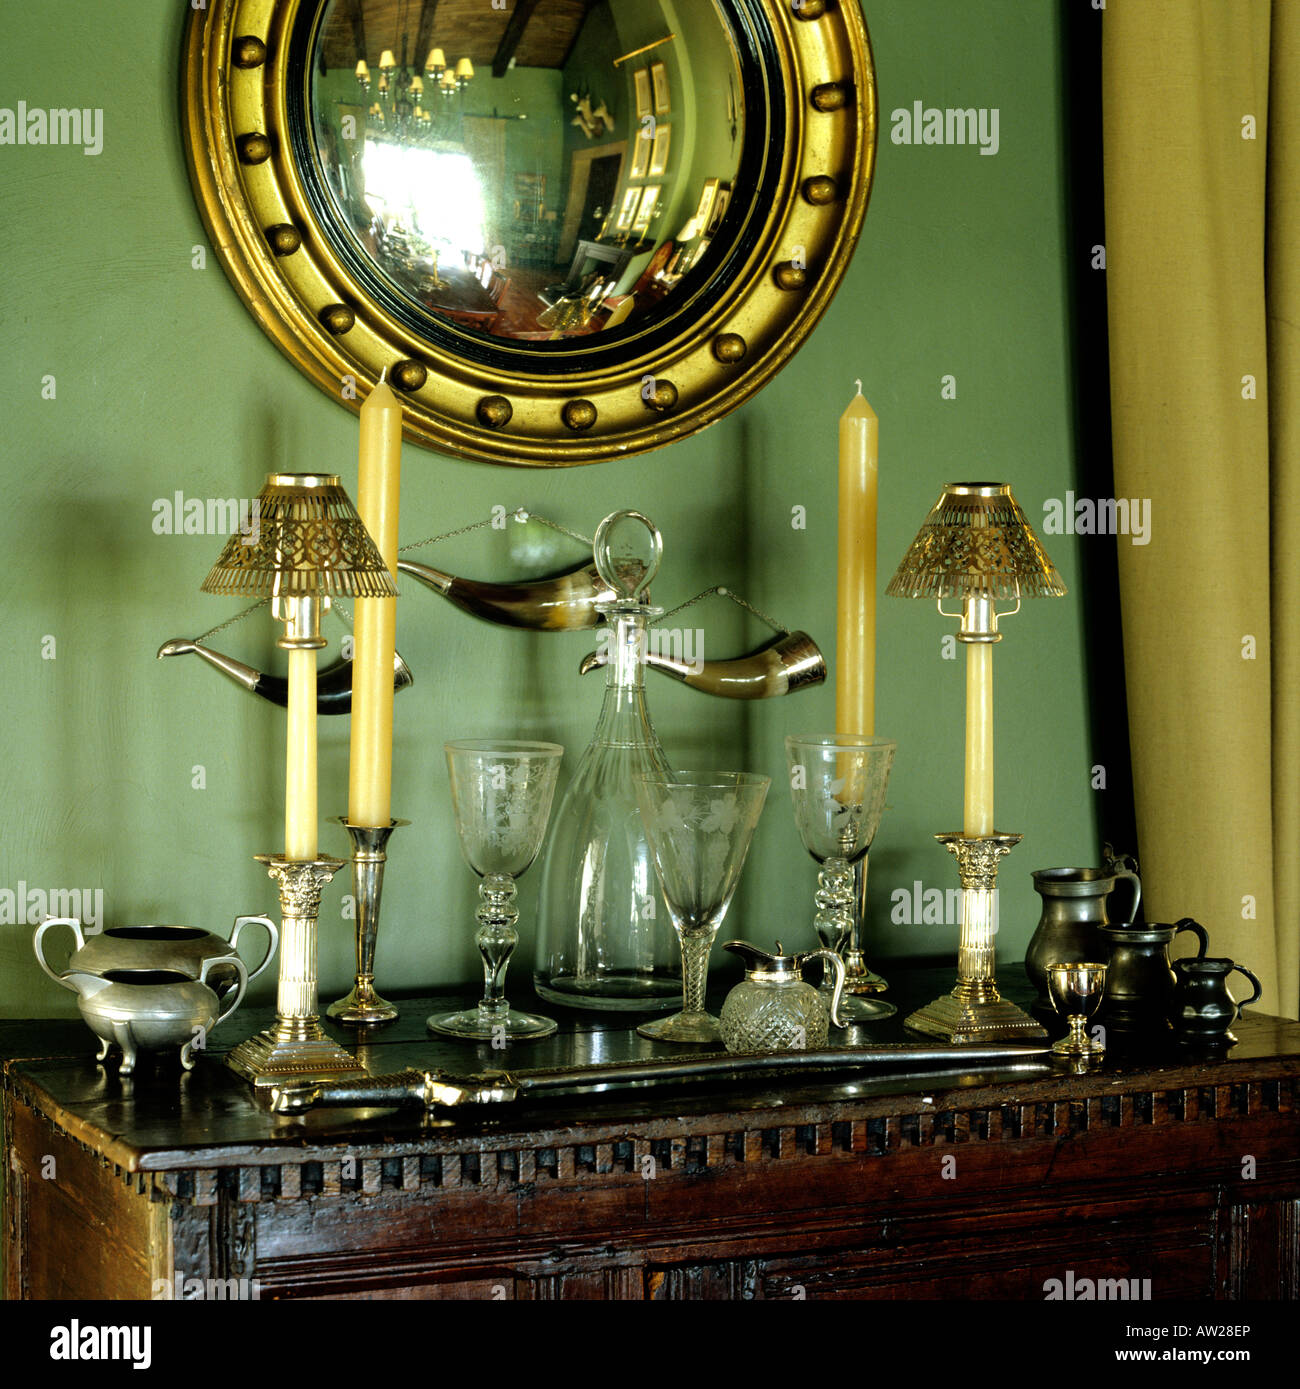 Détail de chandeliers et de verre ware sur armoire antique avec miroir doré convexe Banque D'Images